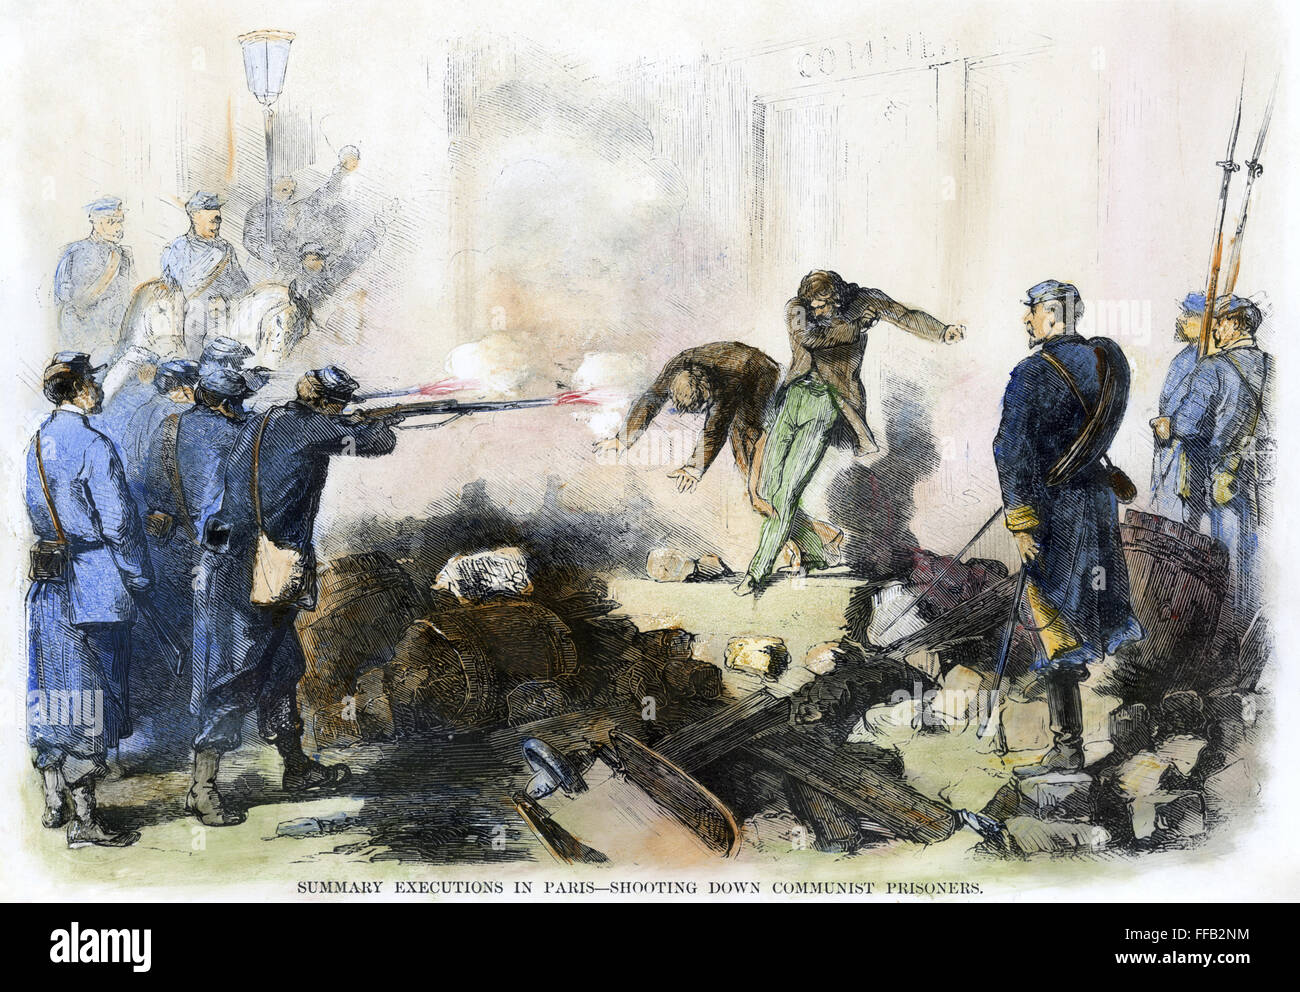 Comuna de París, 1871. /N'SResumen de ejecuciones en París. El derribo de presos comunistas." grabado de color desde un periódico americano contemporáneo. Foto de stock